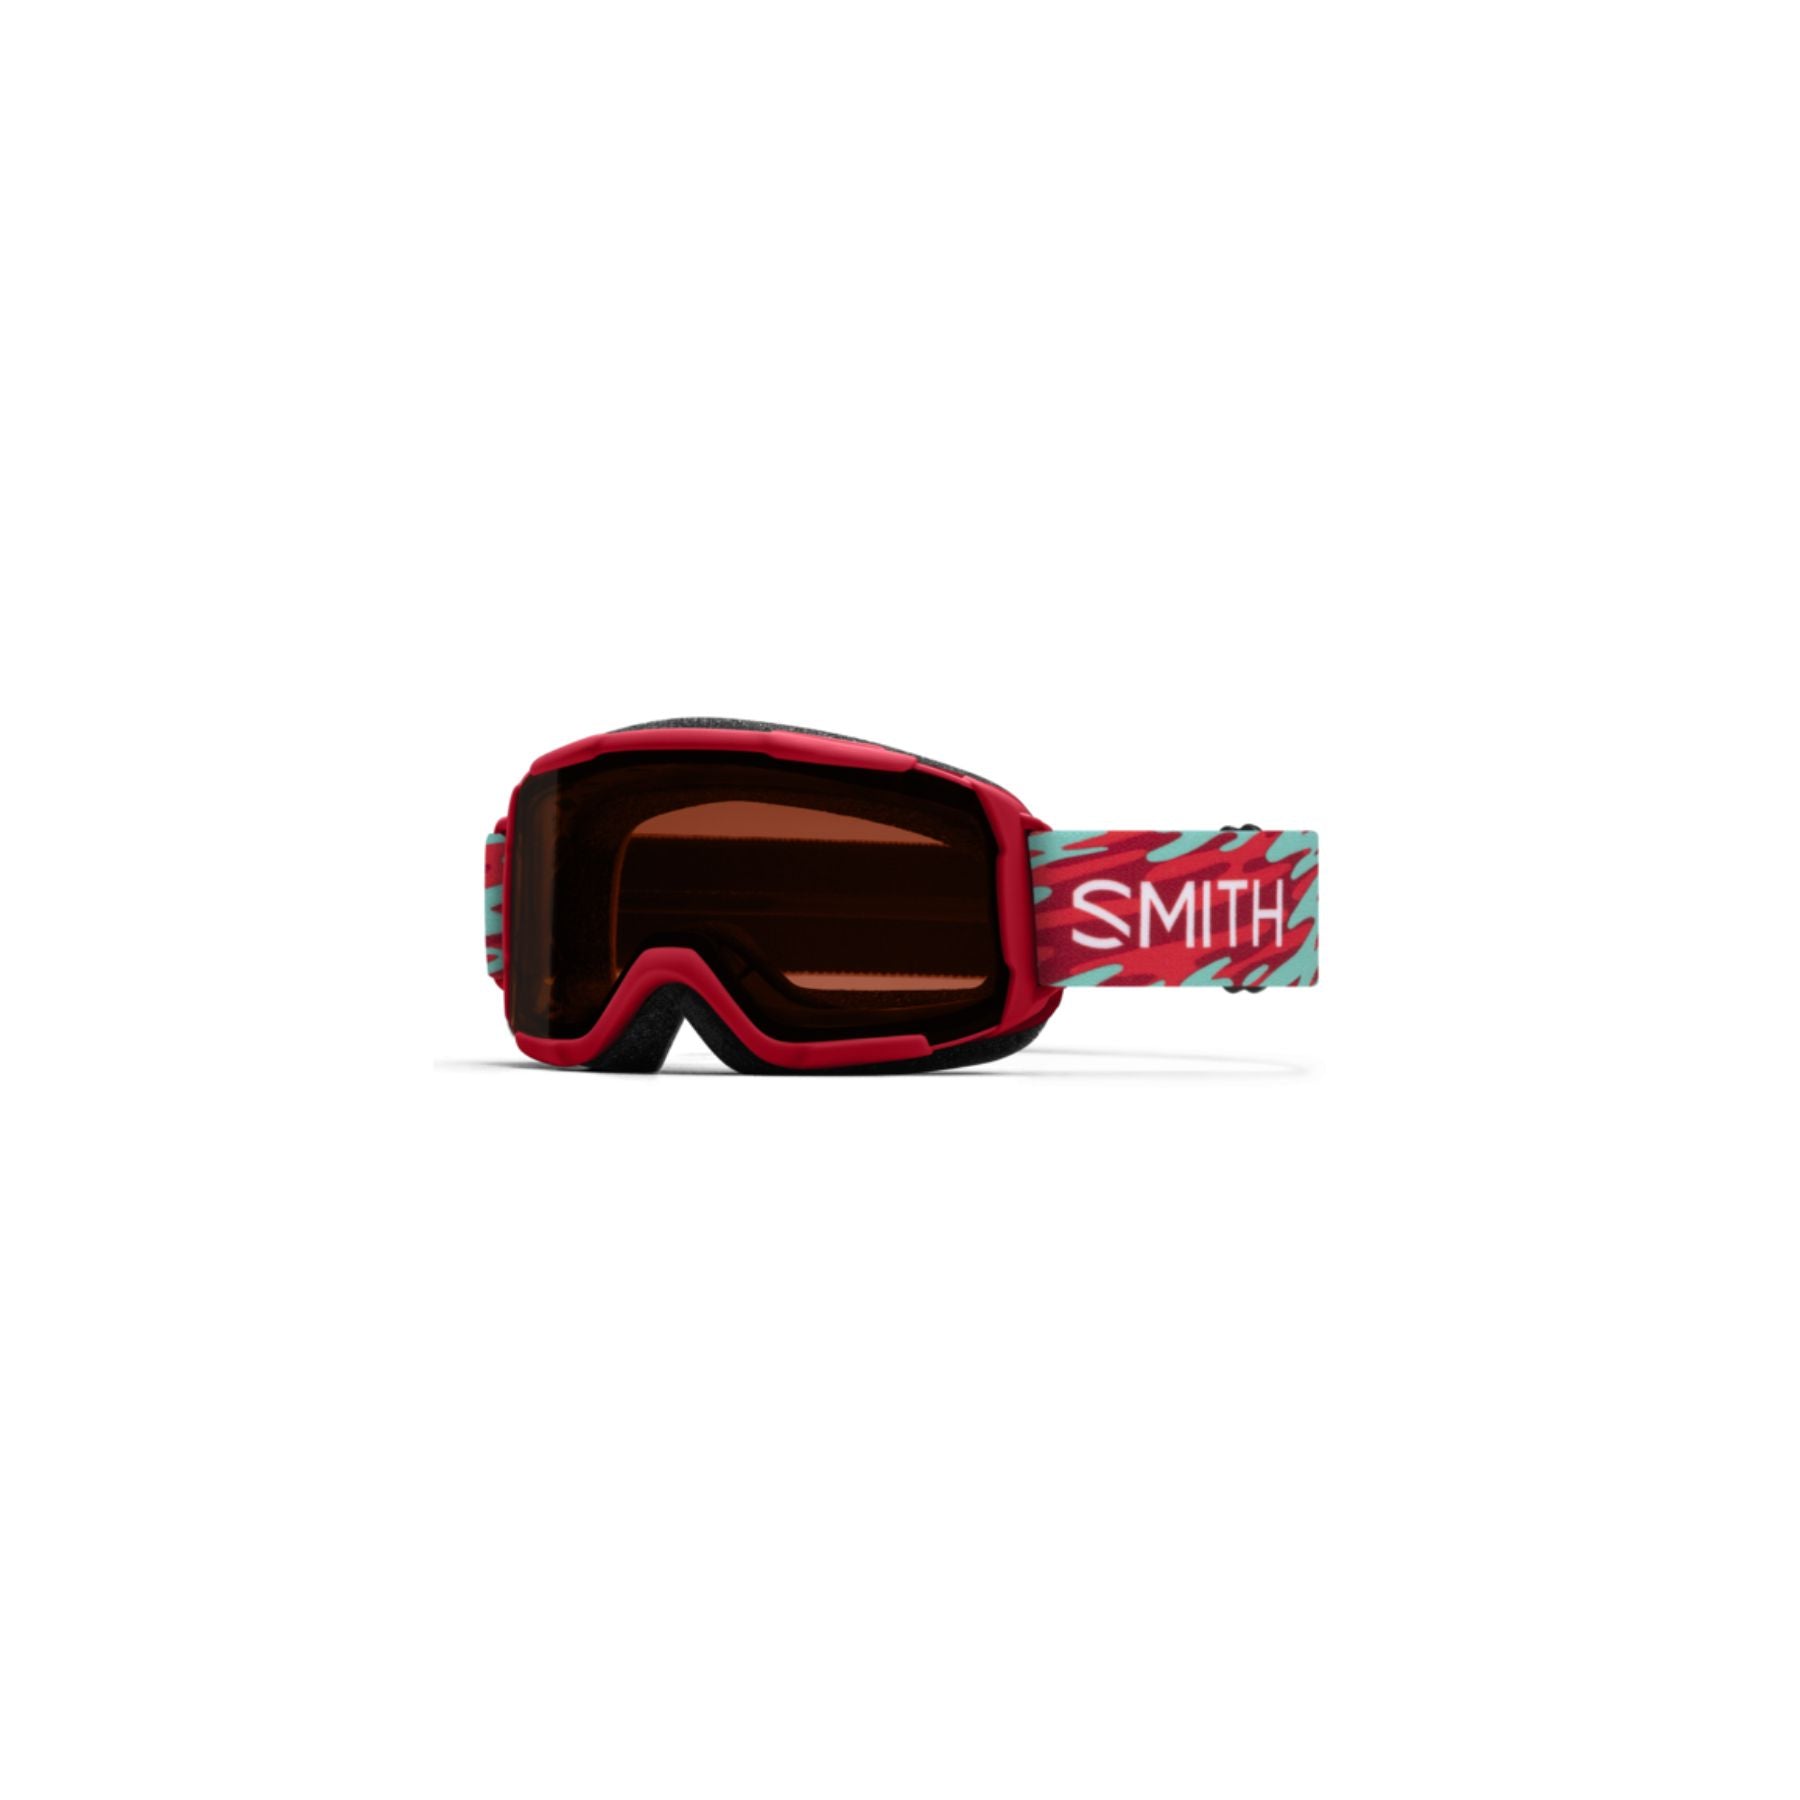 Smith Daredevil Jr Goggle in Crimson Swirled